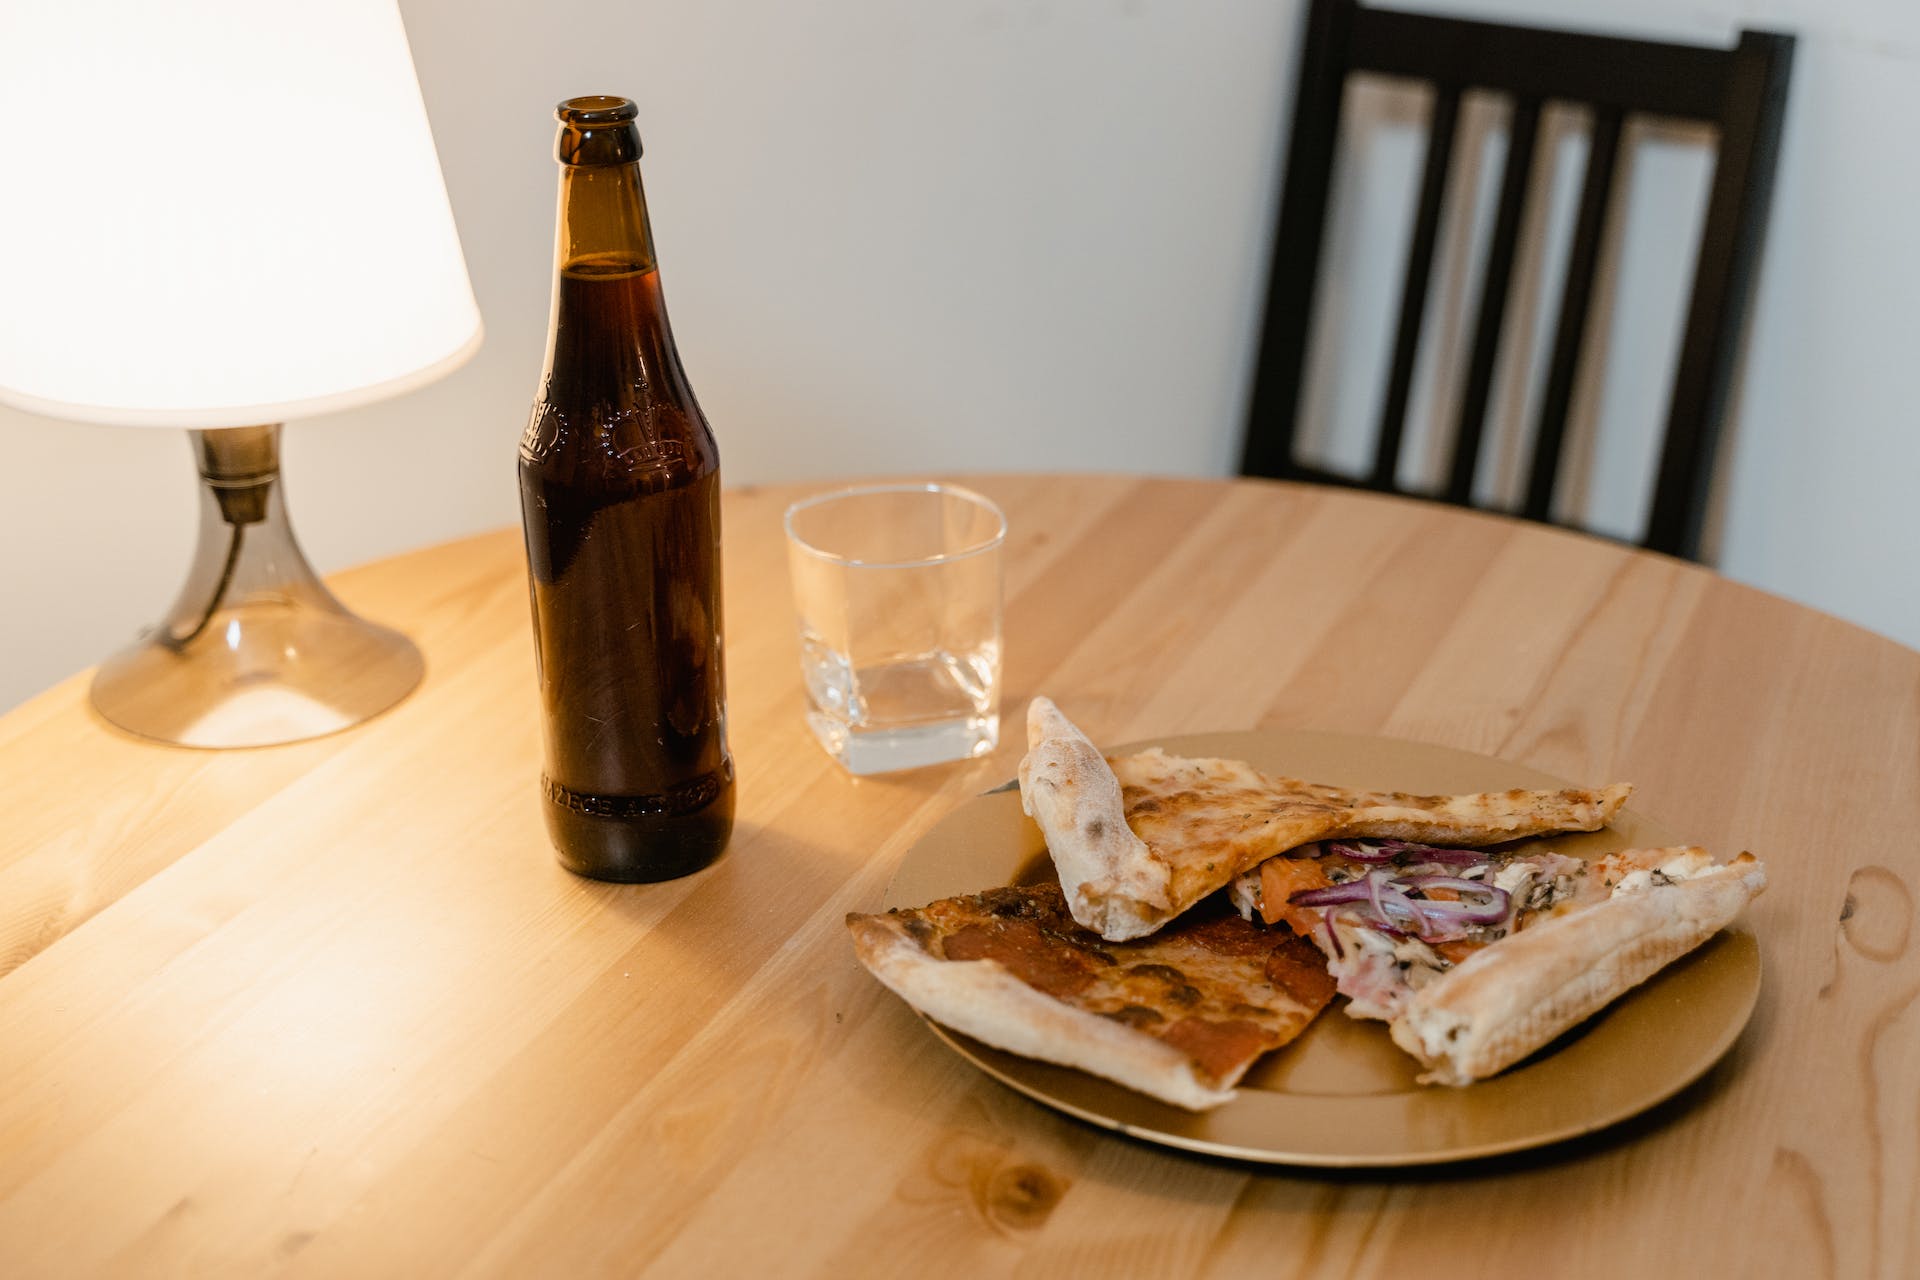 Pizza und Bier auf dem Tisch | Quelle: Pexels